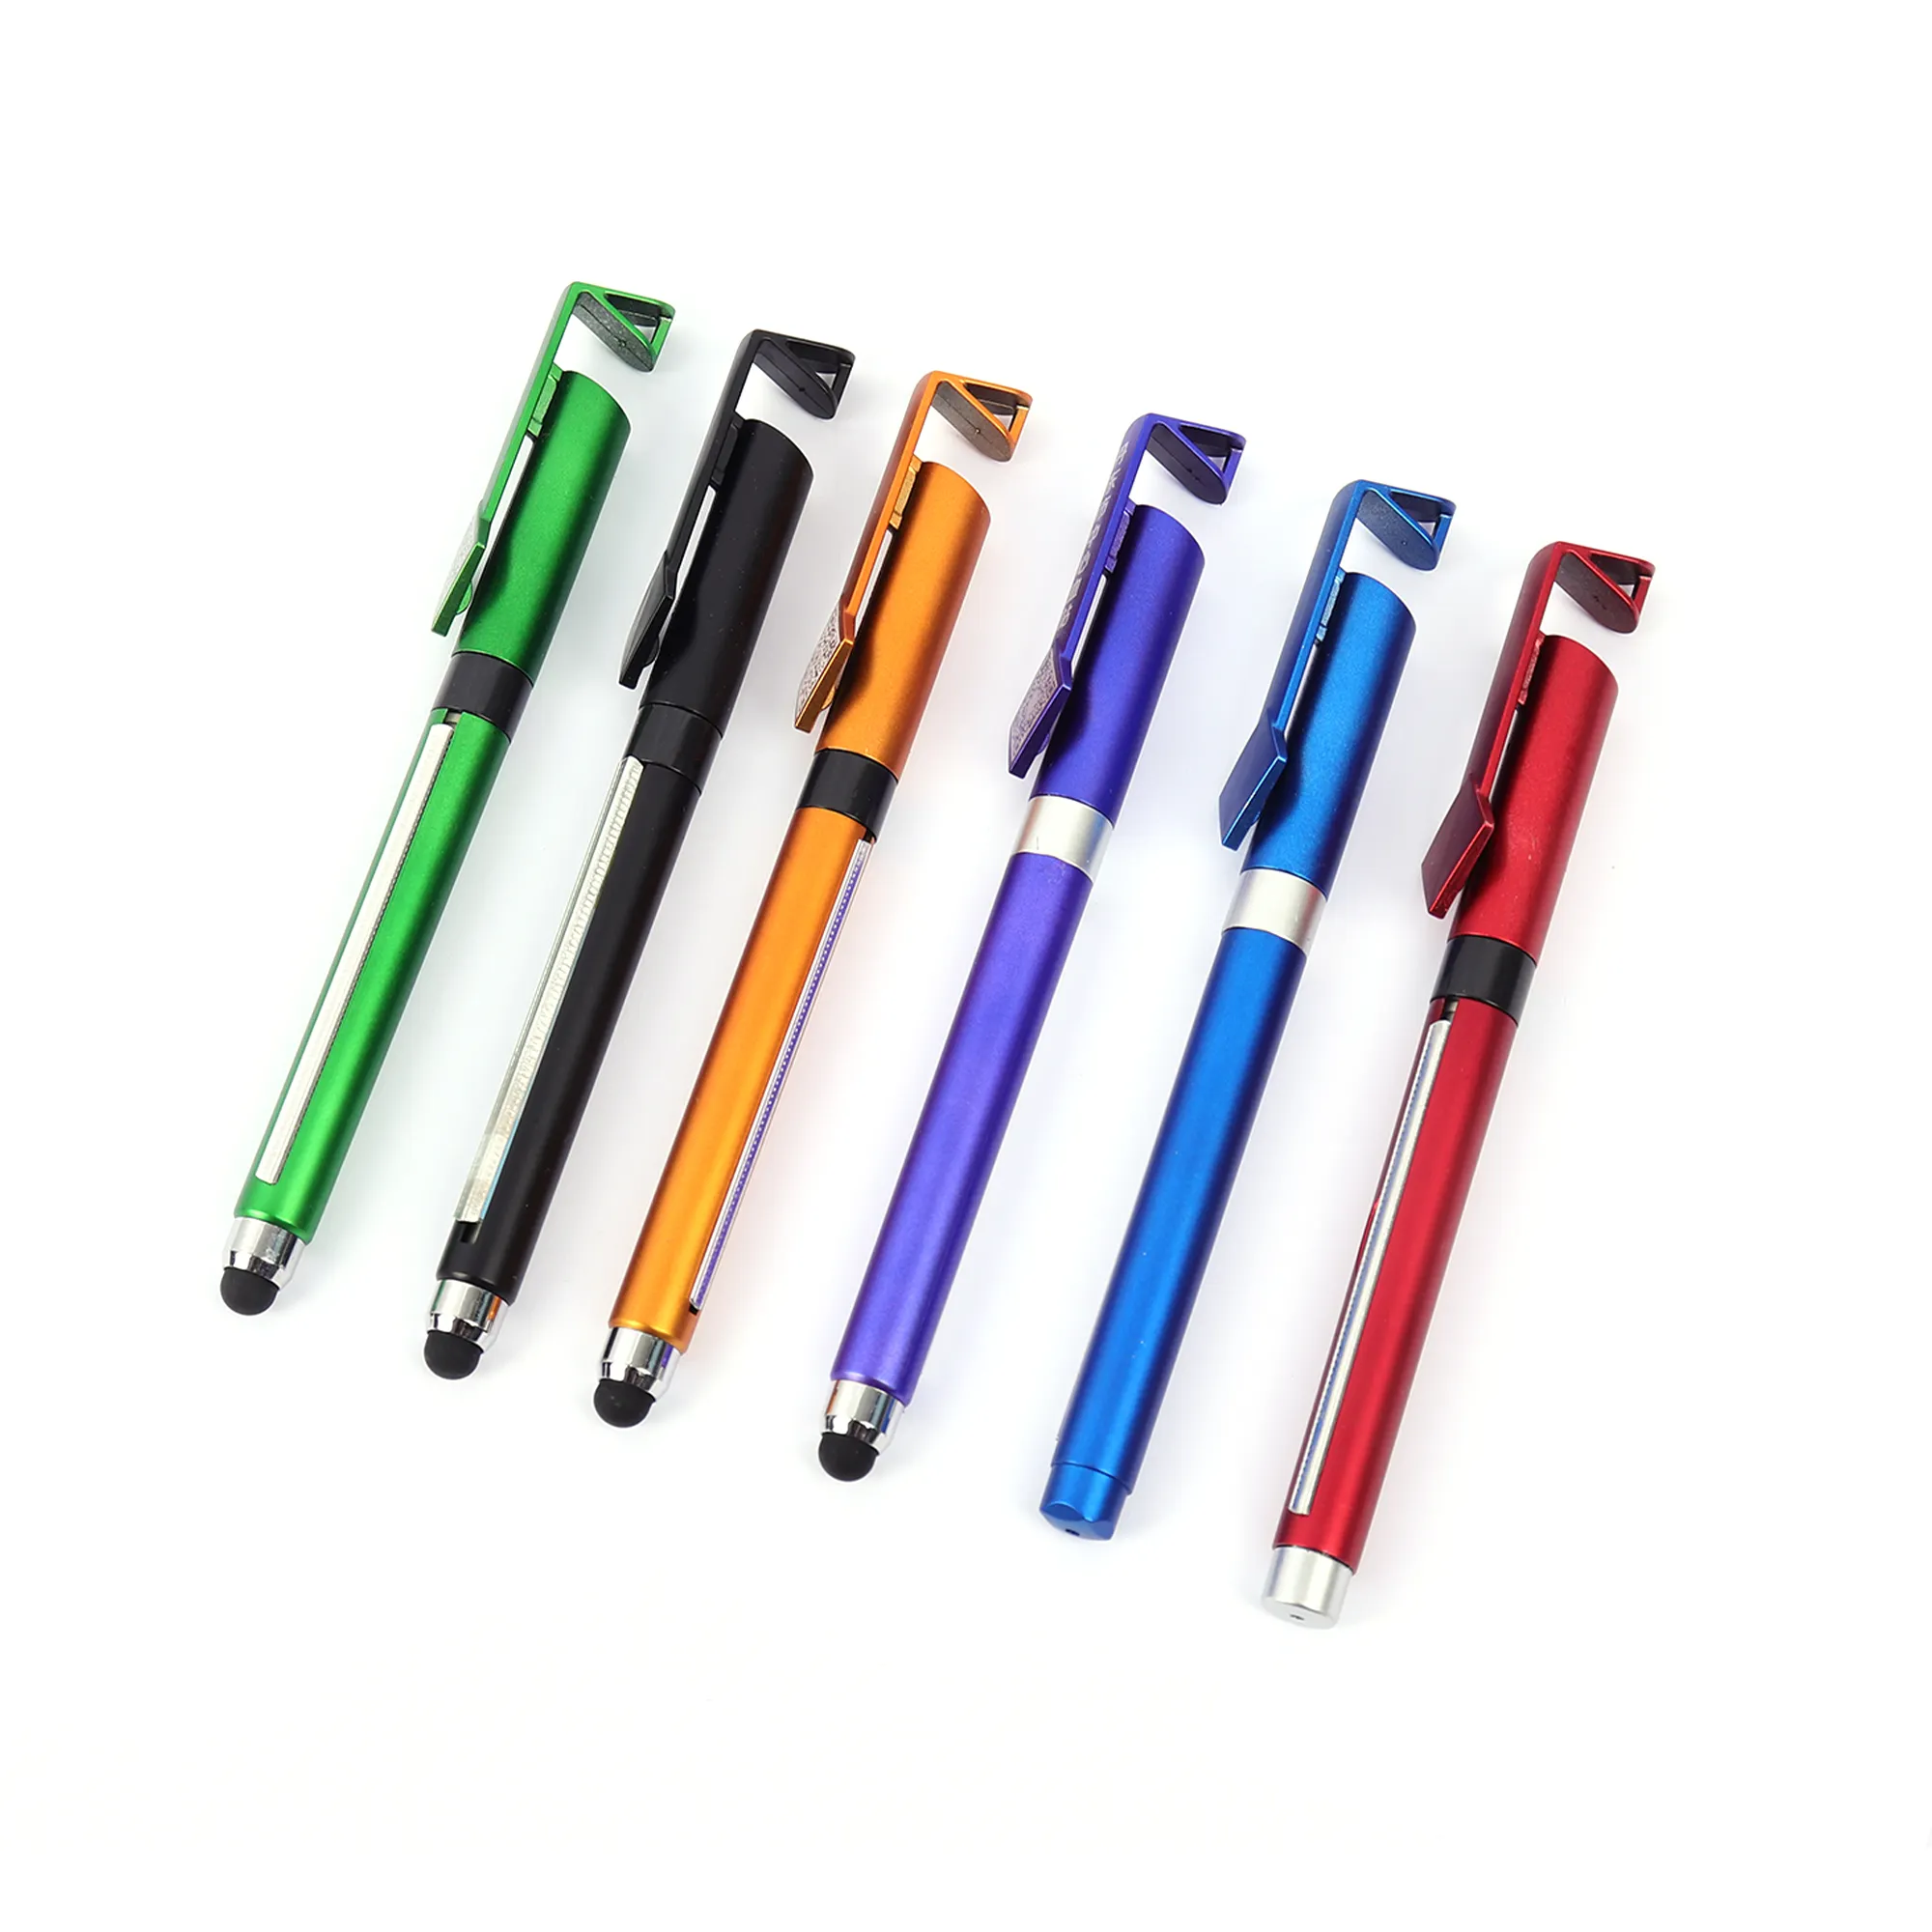 Venta al por mayor de bolígrafos baratos personalizados con logotipo, bolígrafos con bandera rodante, bolígrafos retráctiles de plástico para publicidad promocional